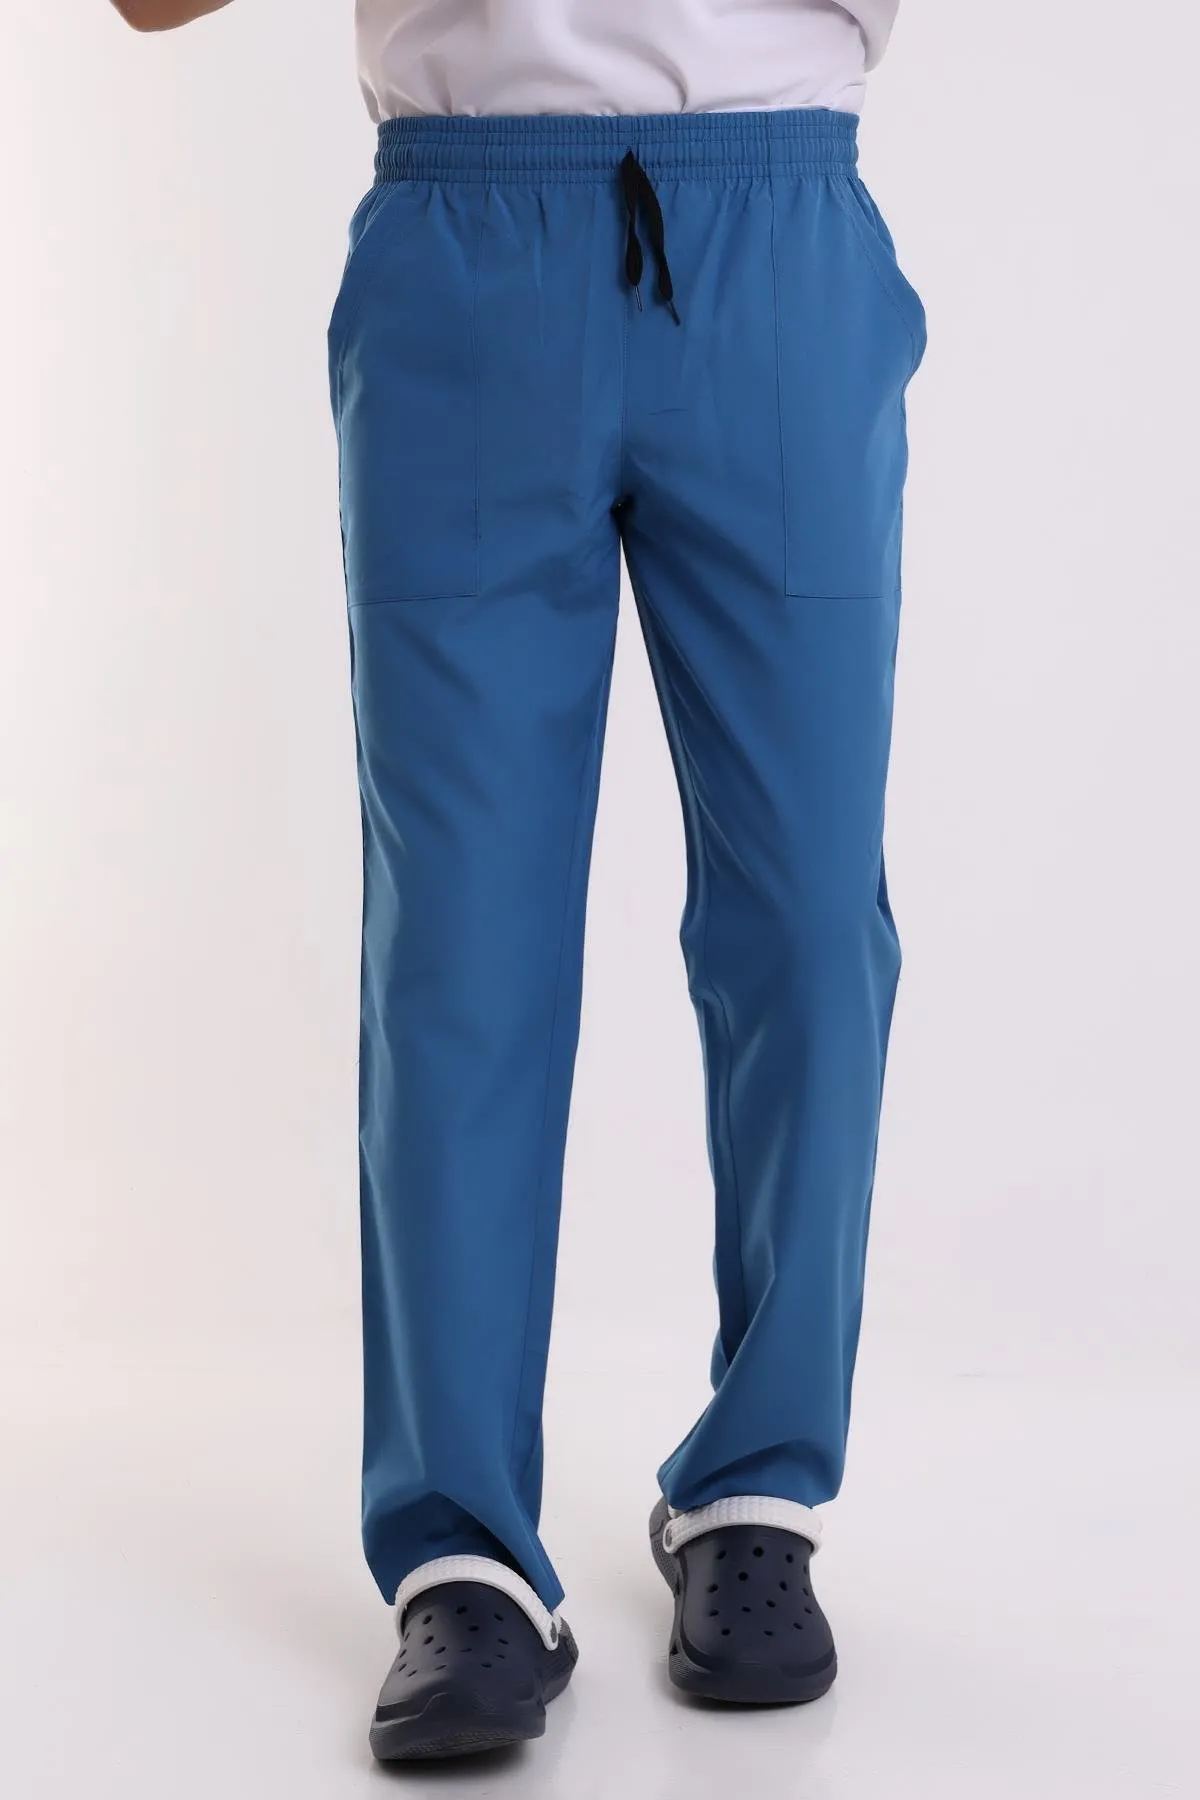 Erkek Alpaka Pantolon - 36 Saü Mavi